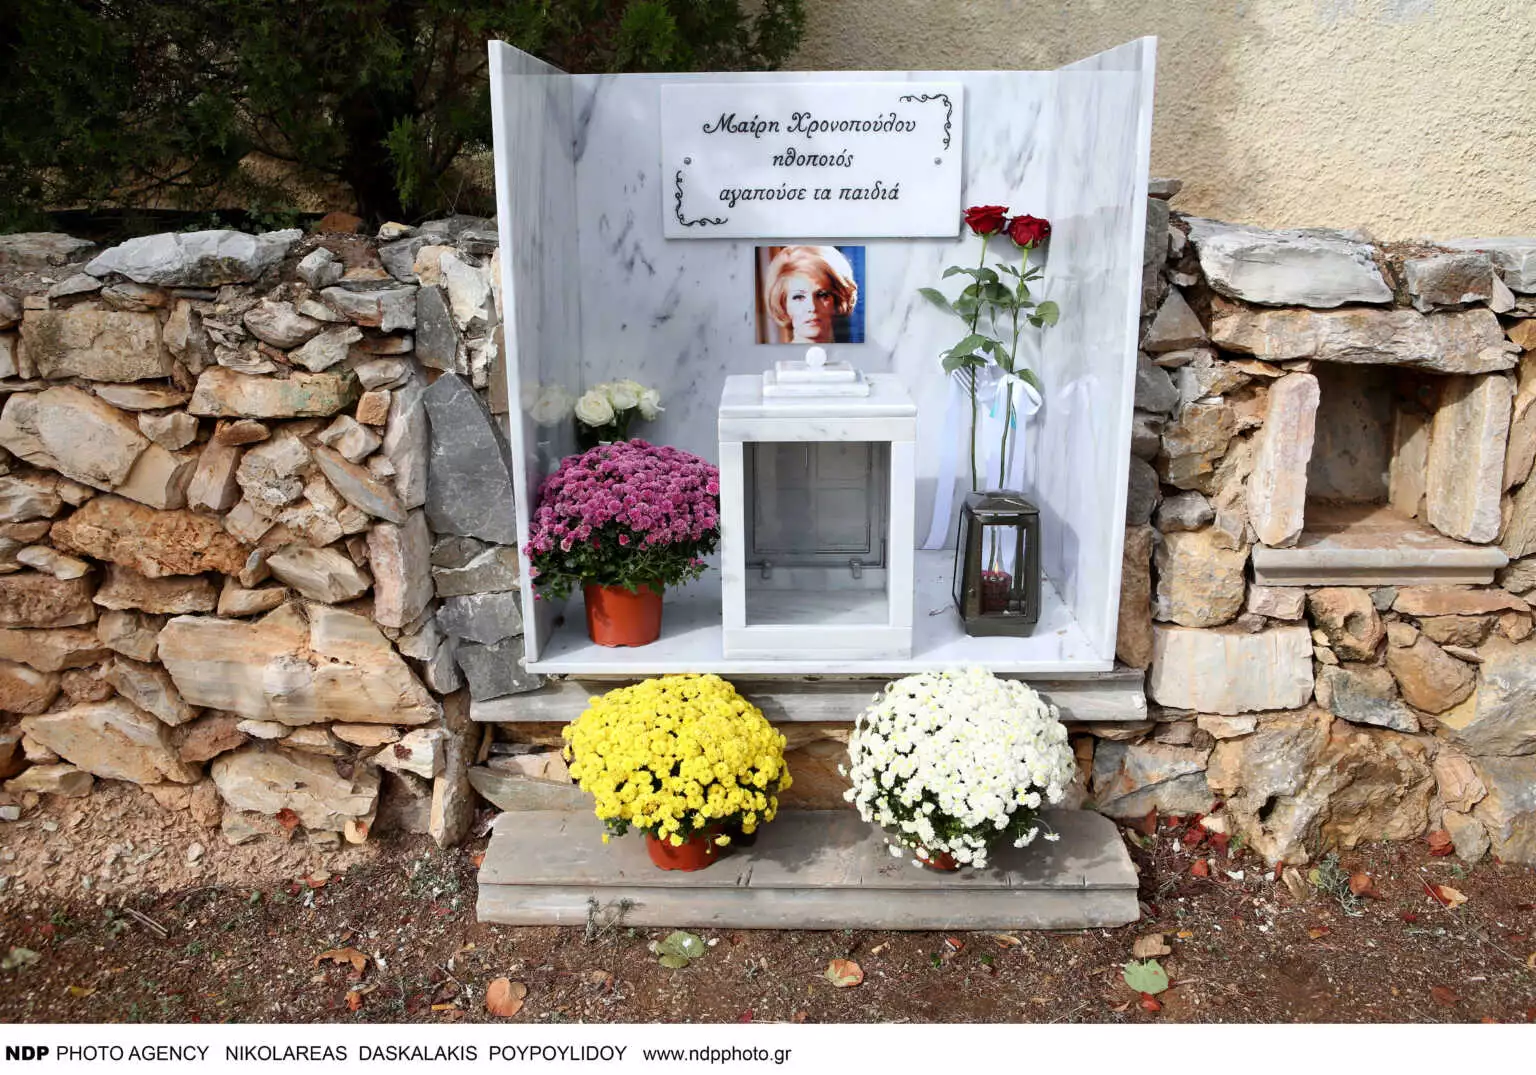 Μαίρη Χρονοπούλου: Τελέστηκε στο σπίτι της στην Παιανία το μνημόσυνο για τις 40 ημέρες από τον θάνατό της